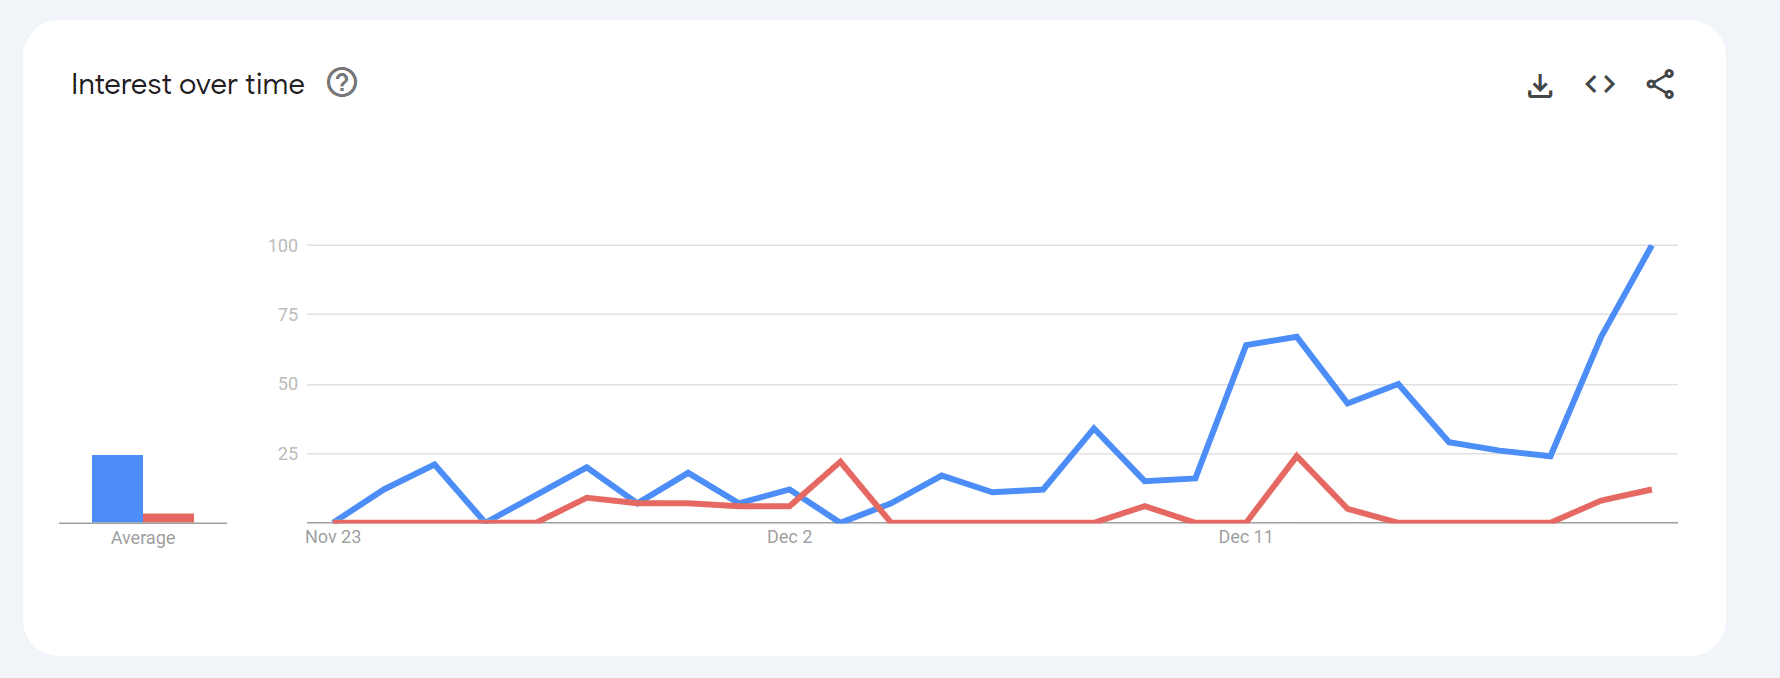 Injective vs Gorilla: Google Trends